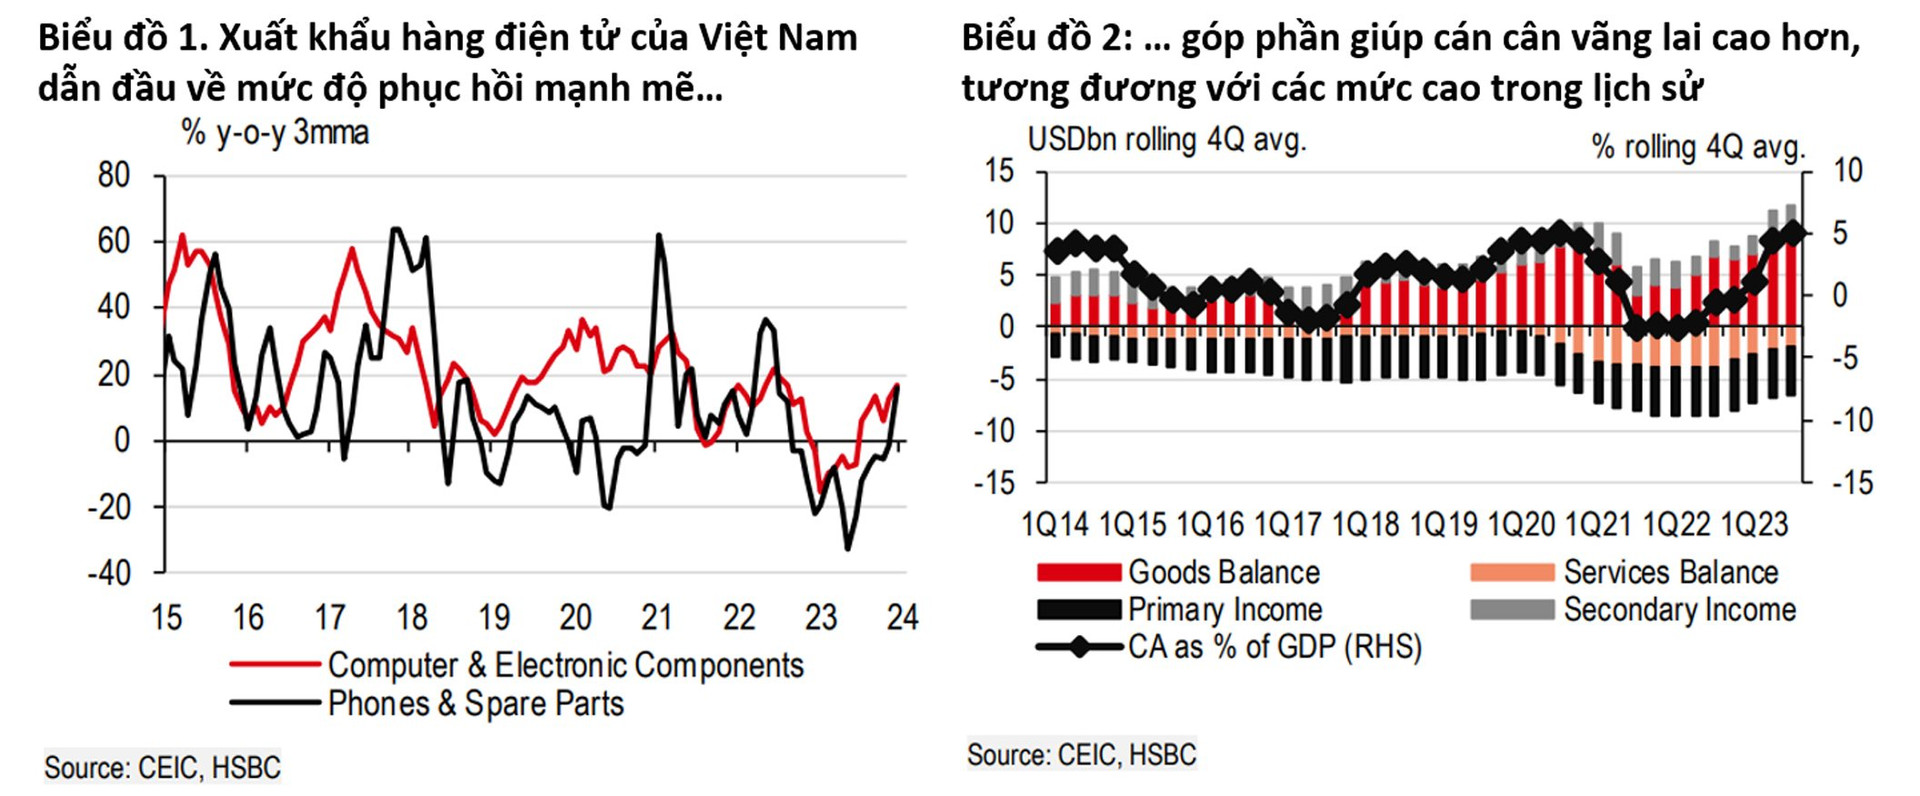 HSBC: Đã đến lúc bình thường hóa tăng trưởng - Ảnh 1.